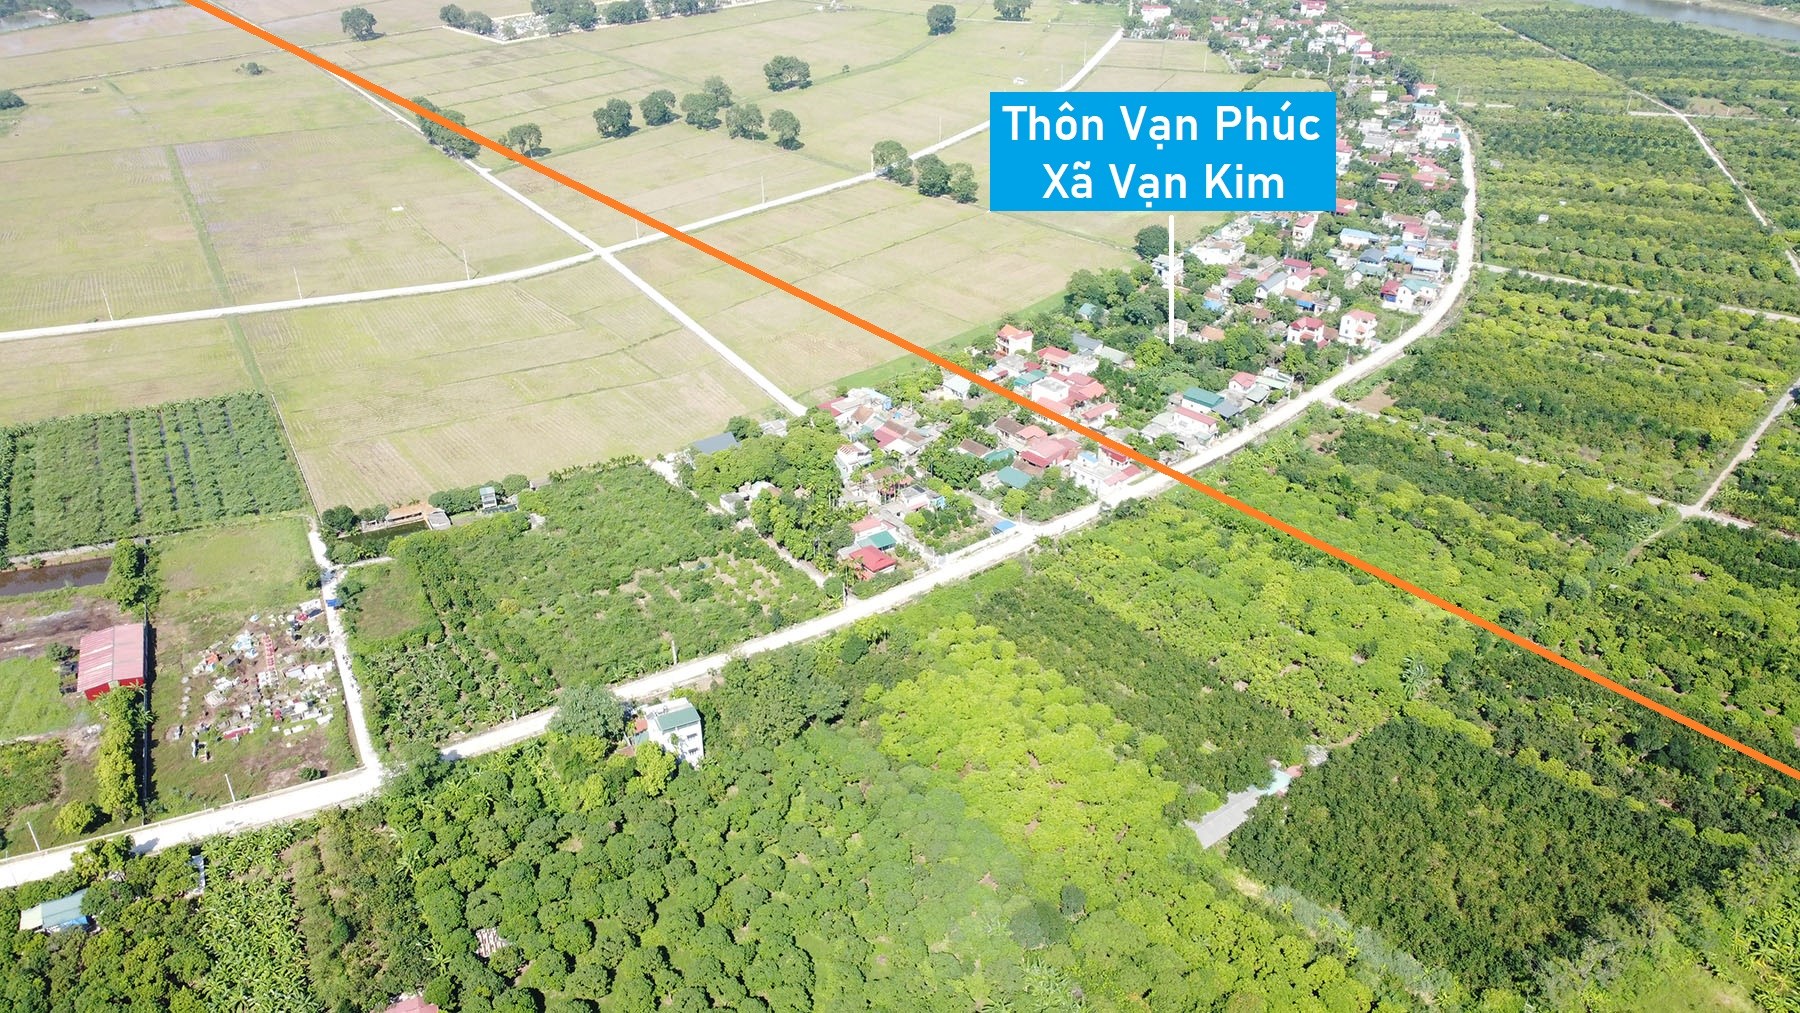 Toàn cảnh vị trí quy hoạch cầu vượt sông Đáy nối huyện Ứng Hòa - Mỹ Đức, Hà Nội